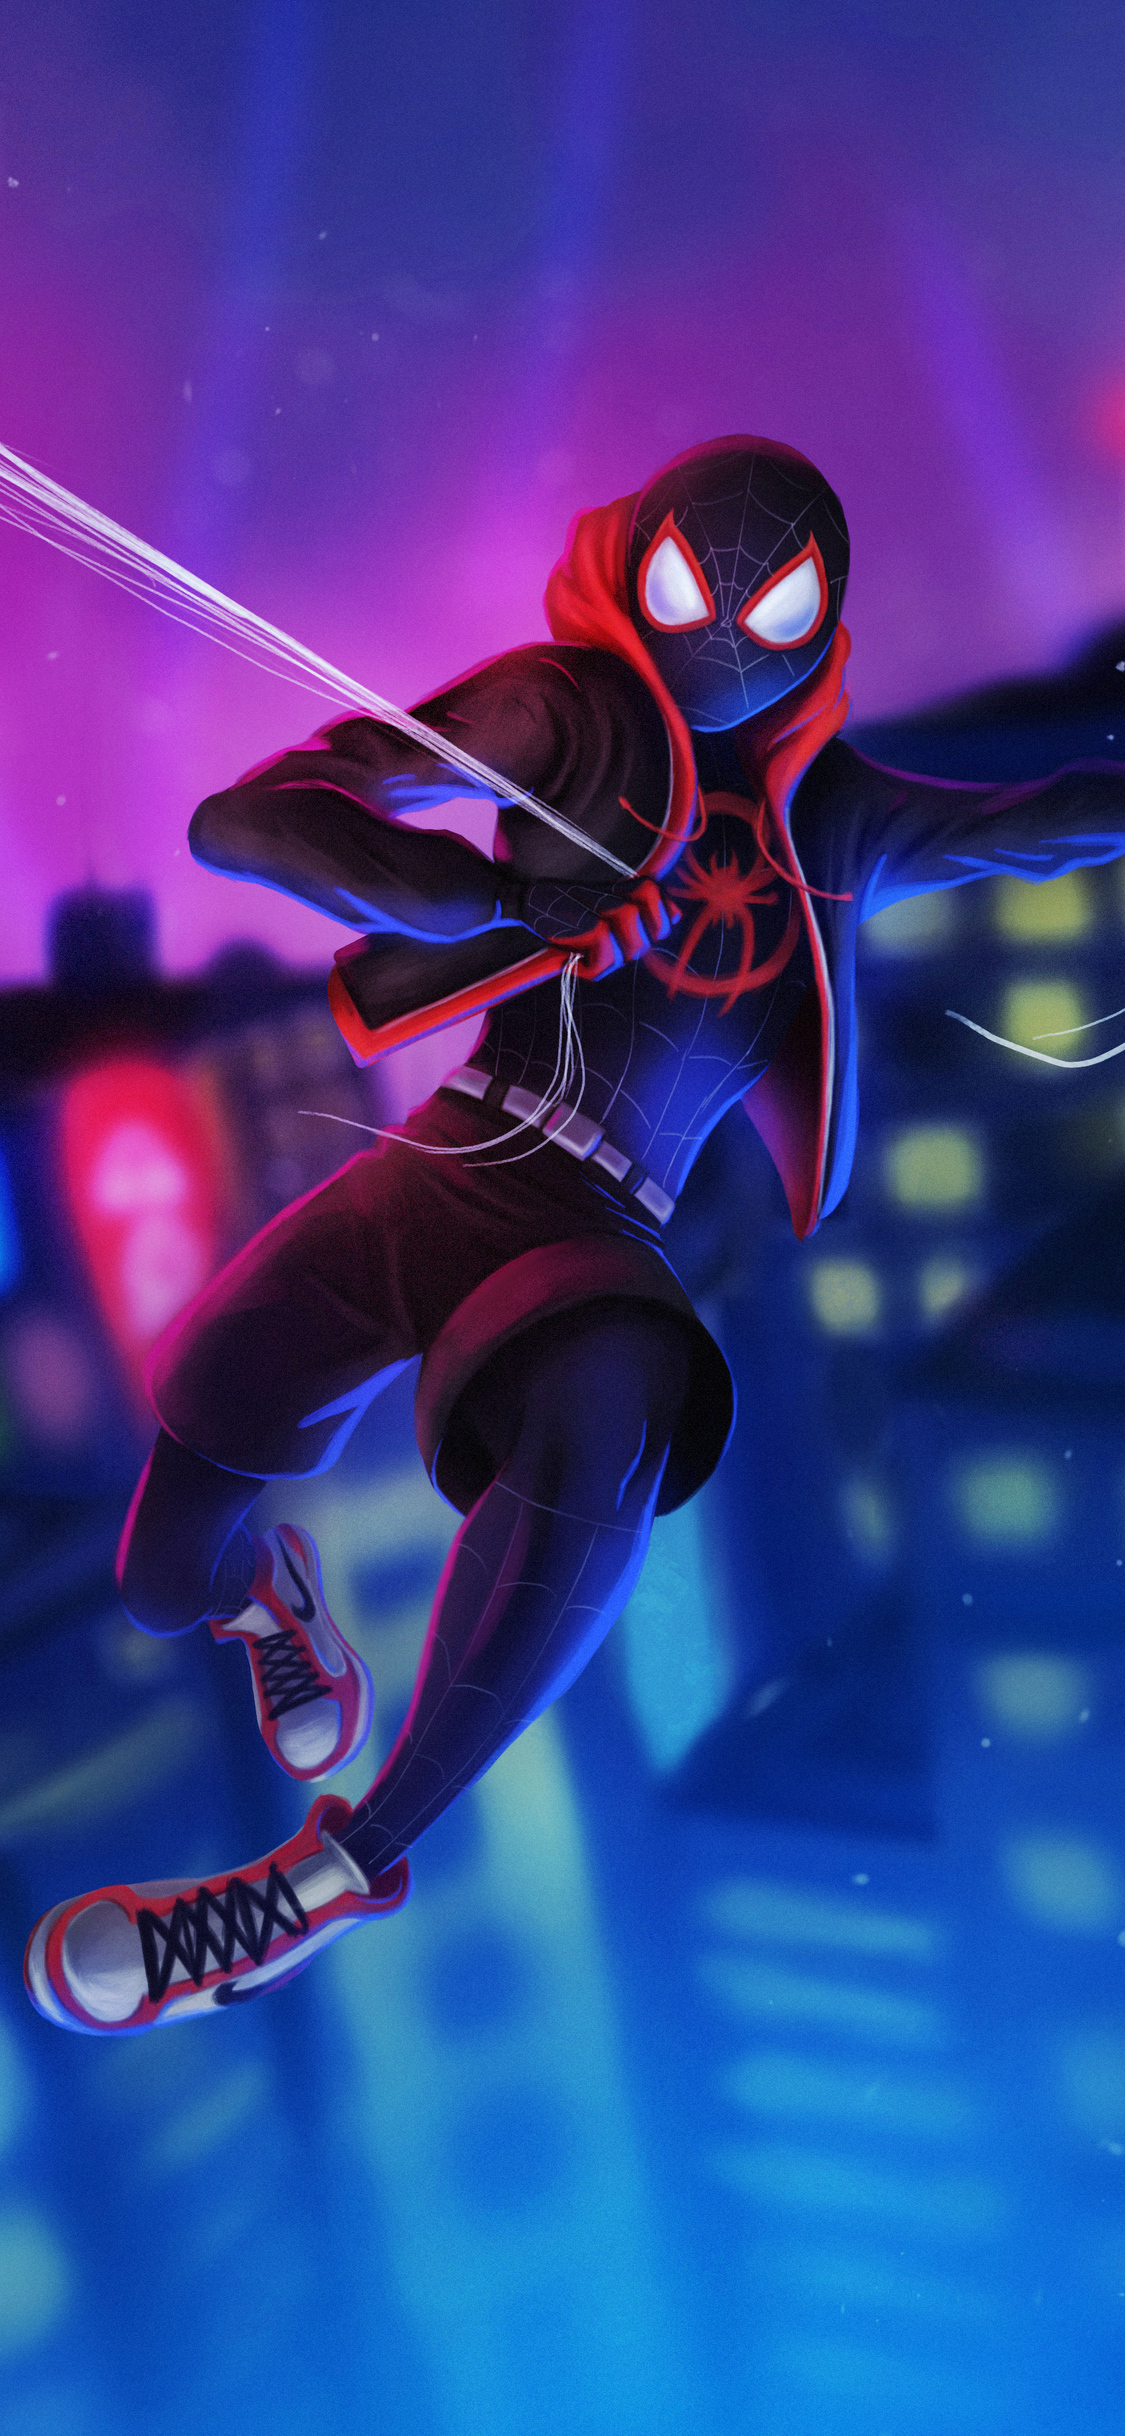 Spiderman 4k Iphone Wallpapers - Miles Morales Wallpaper Iphone X -  1125x2436 Wallpaper 